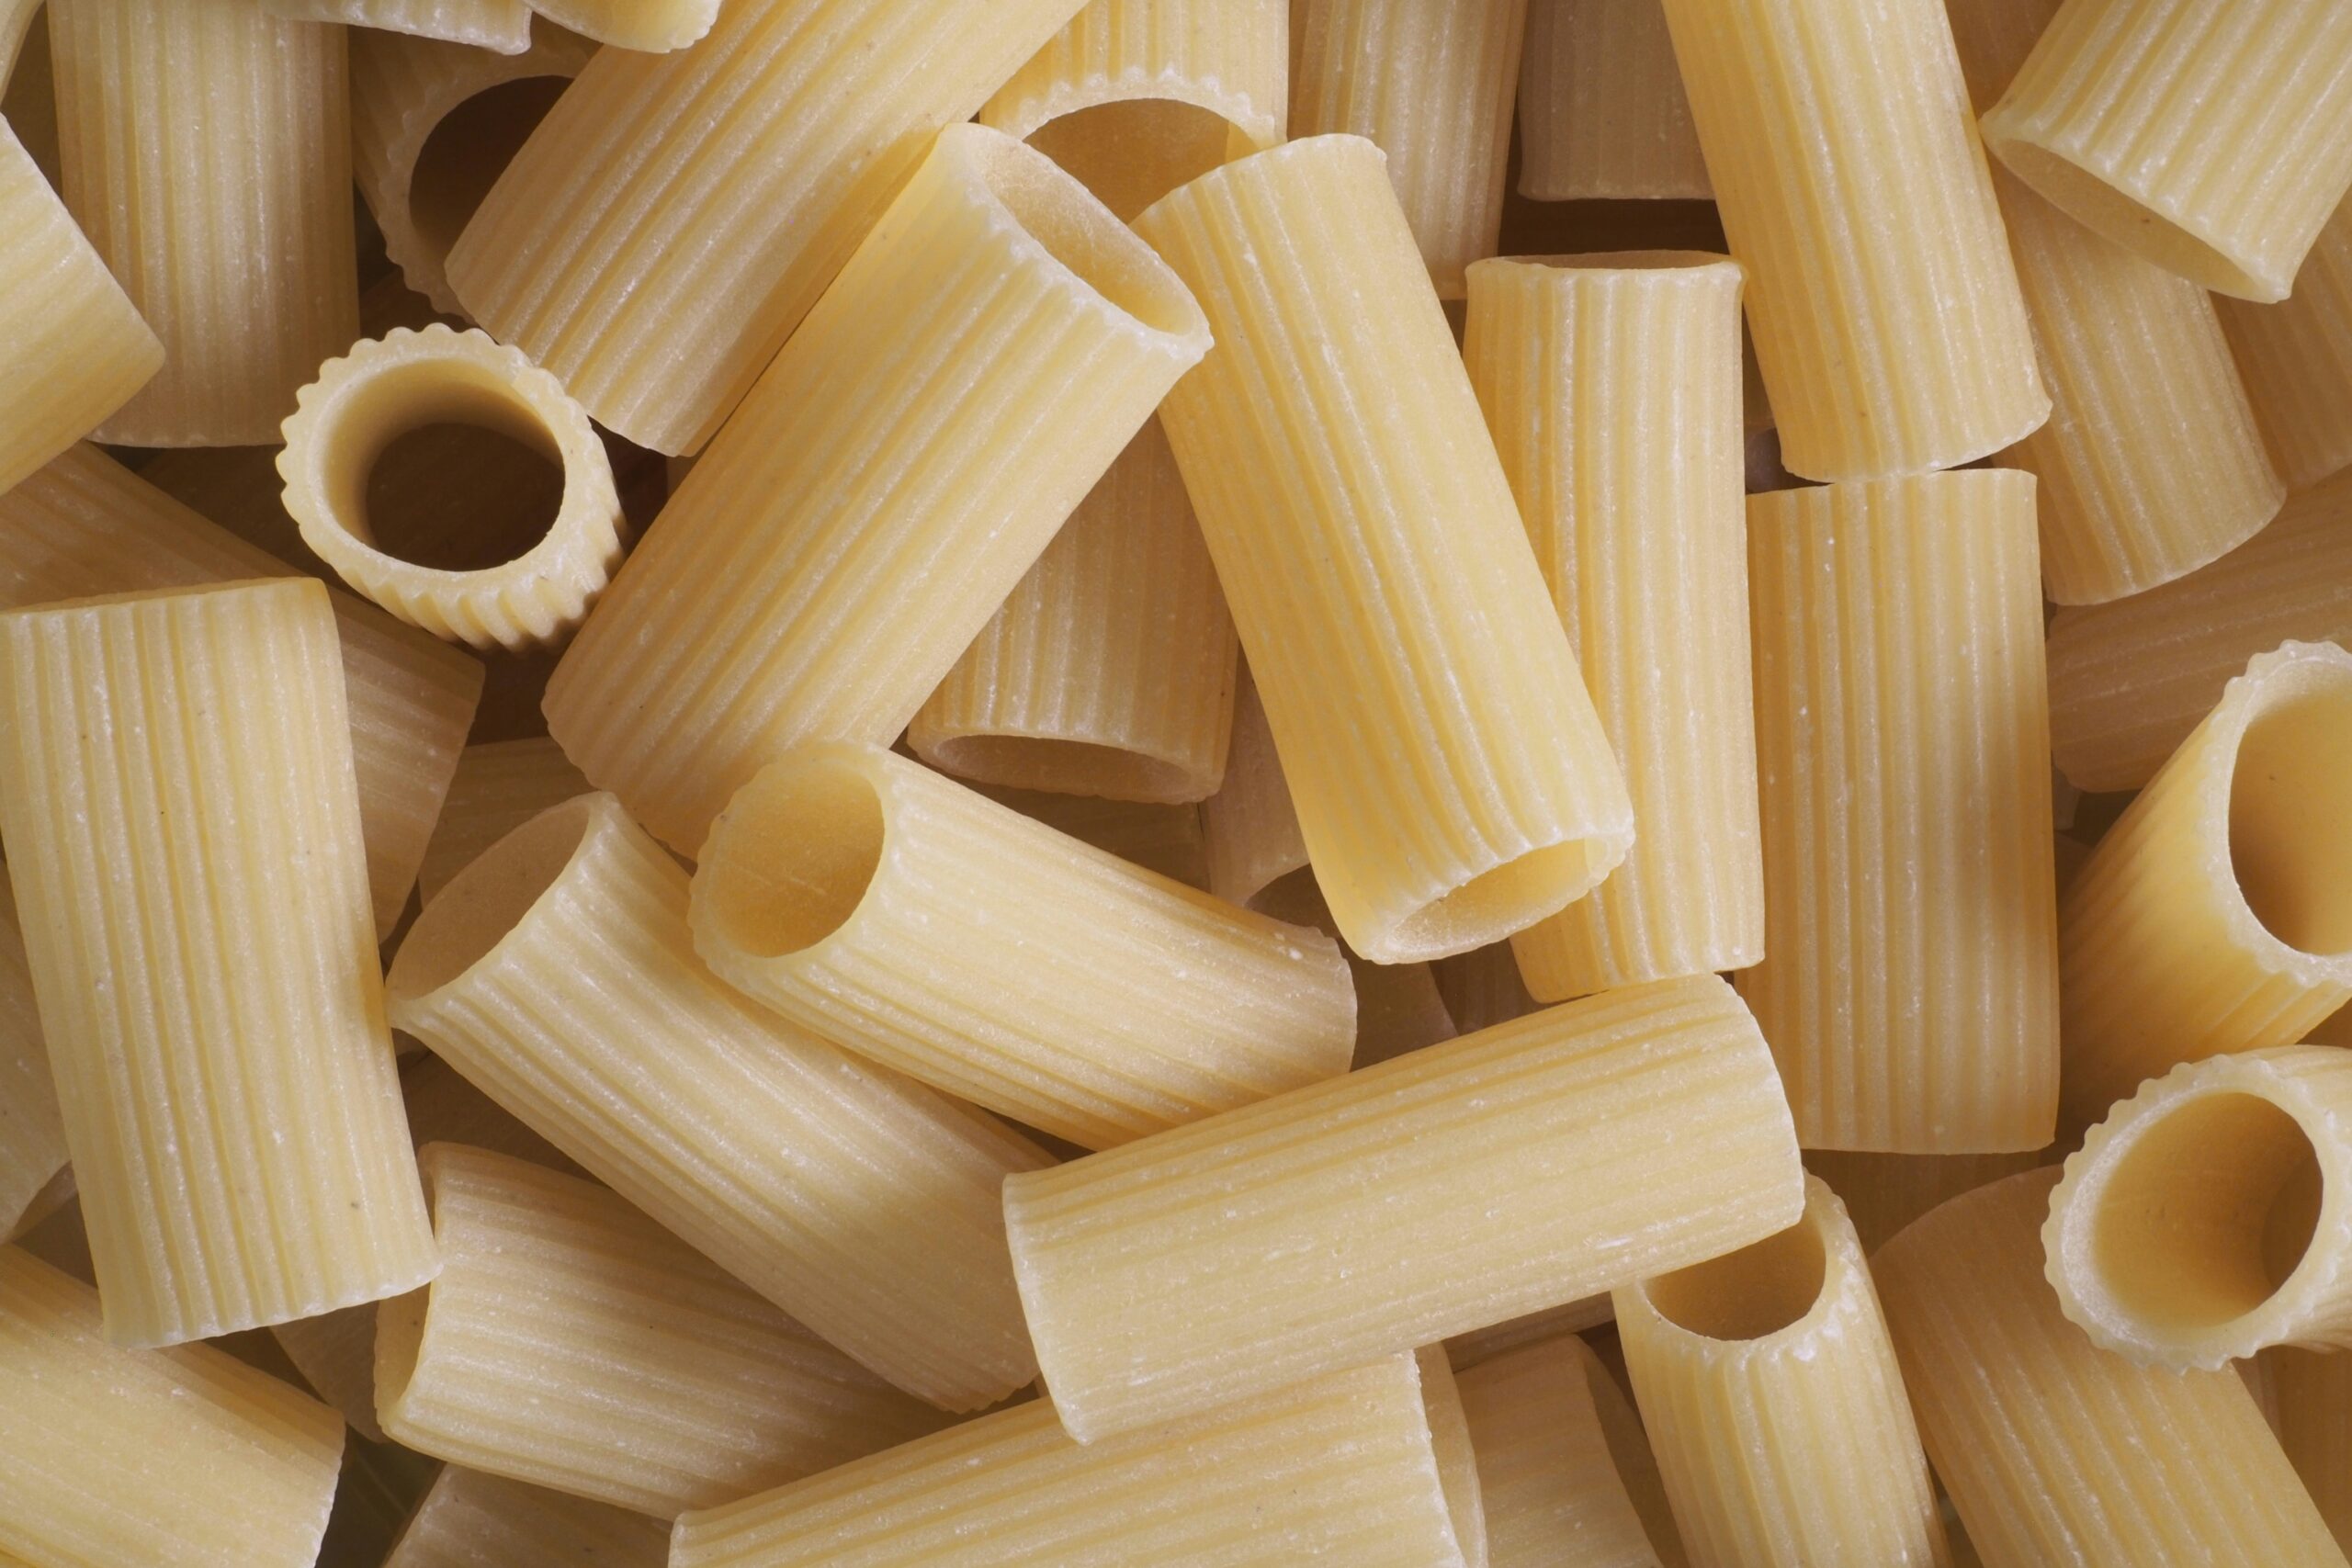 Make this creamy vodka pasta for a Valentine's Day Dinner idea. Pictured: Rigatoni pasta